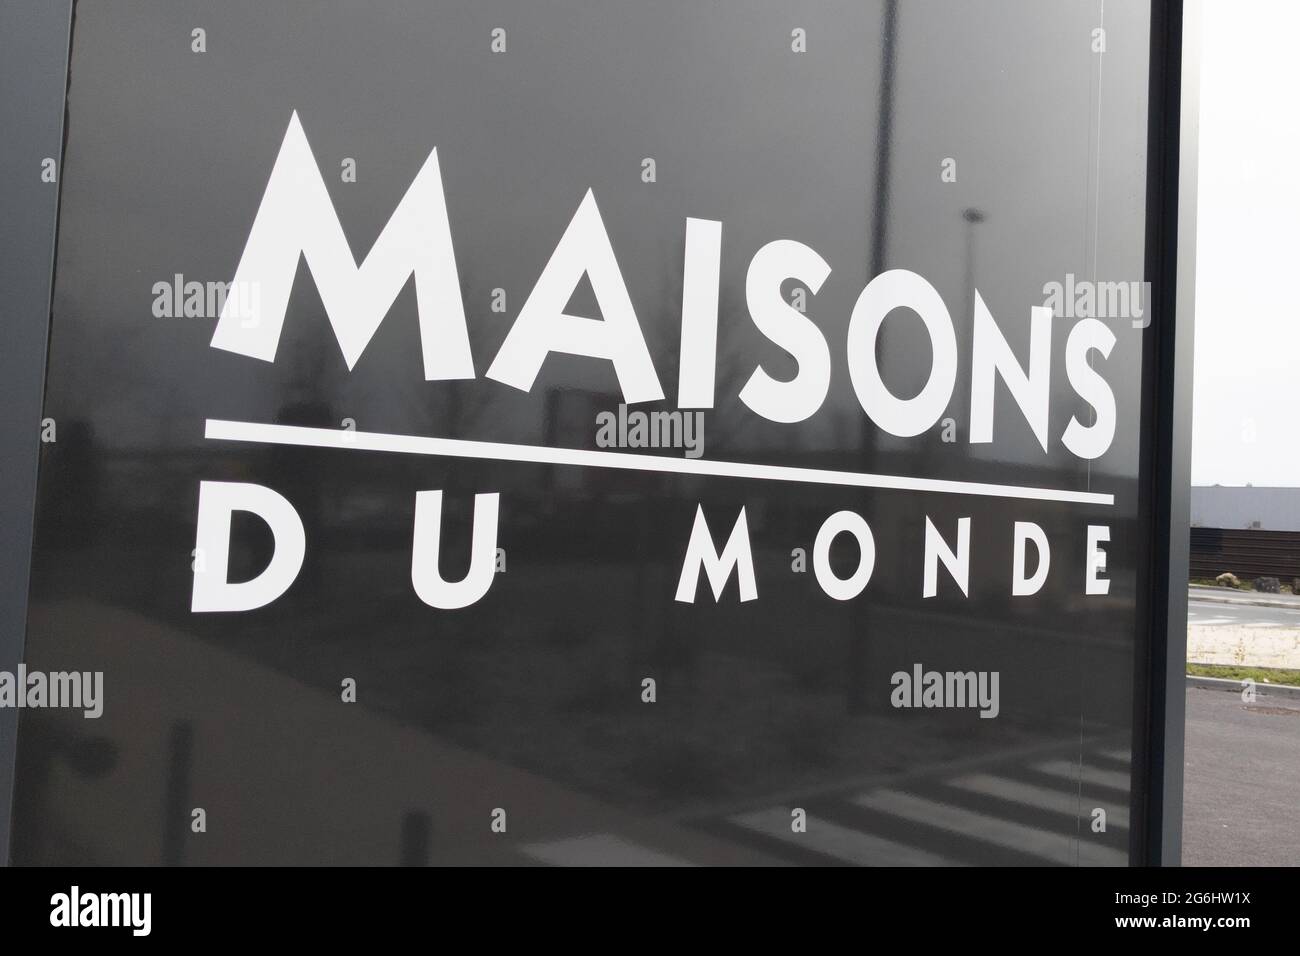 Maison Du Monde, decoration and furniture store